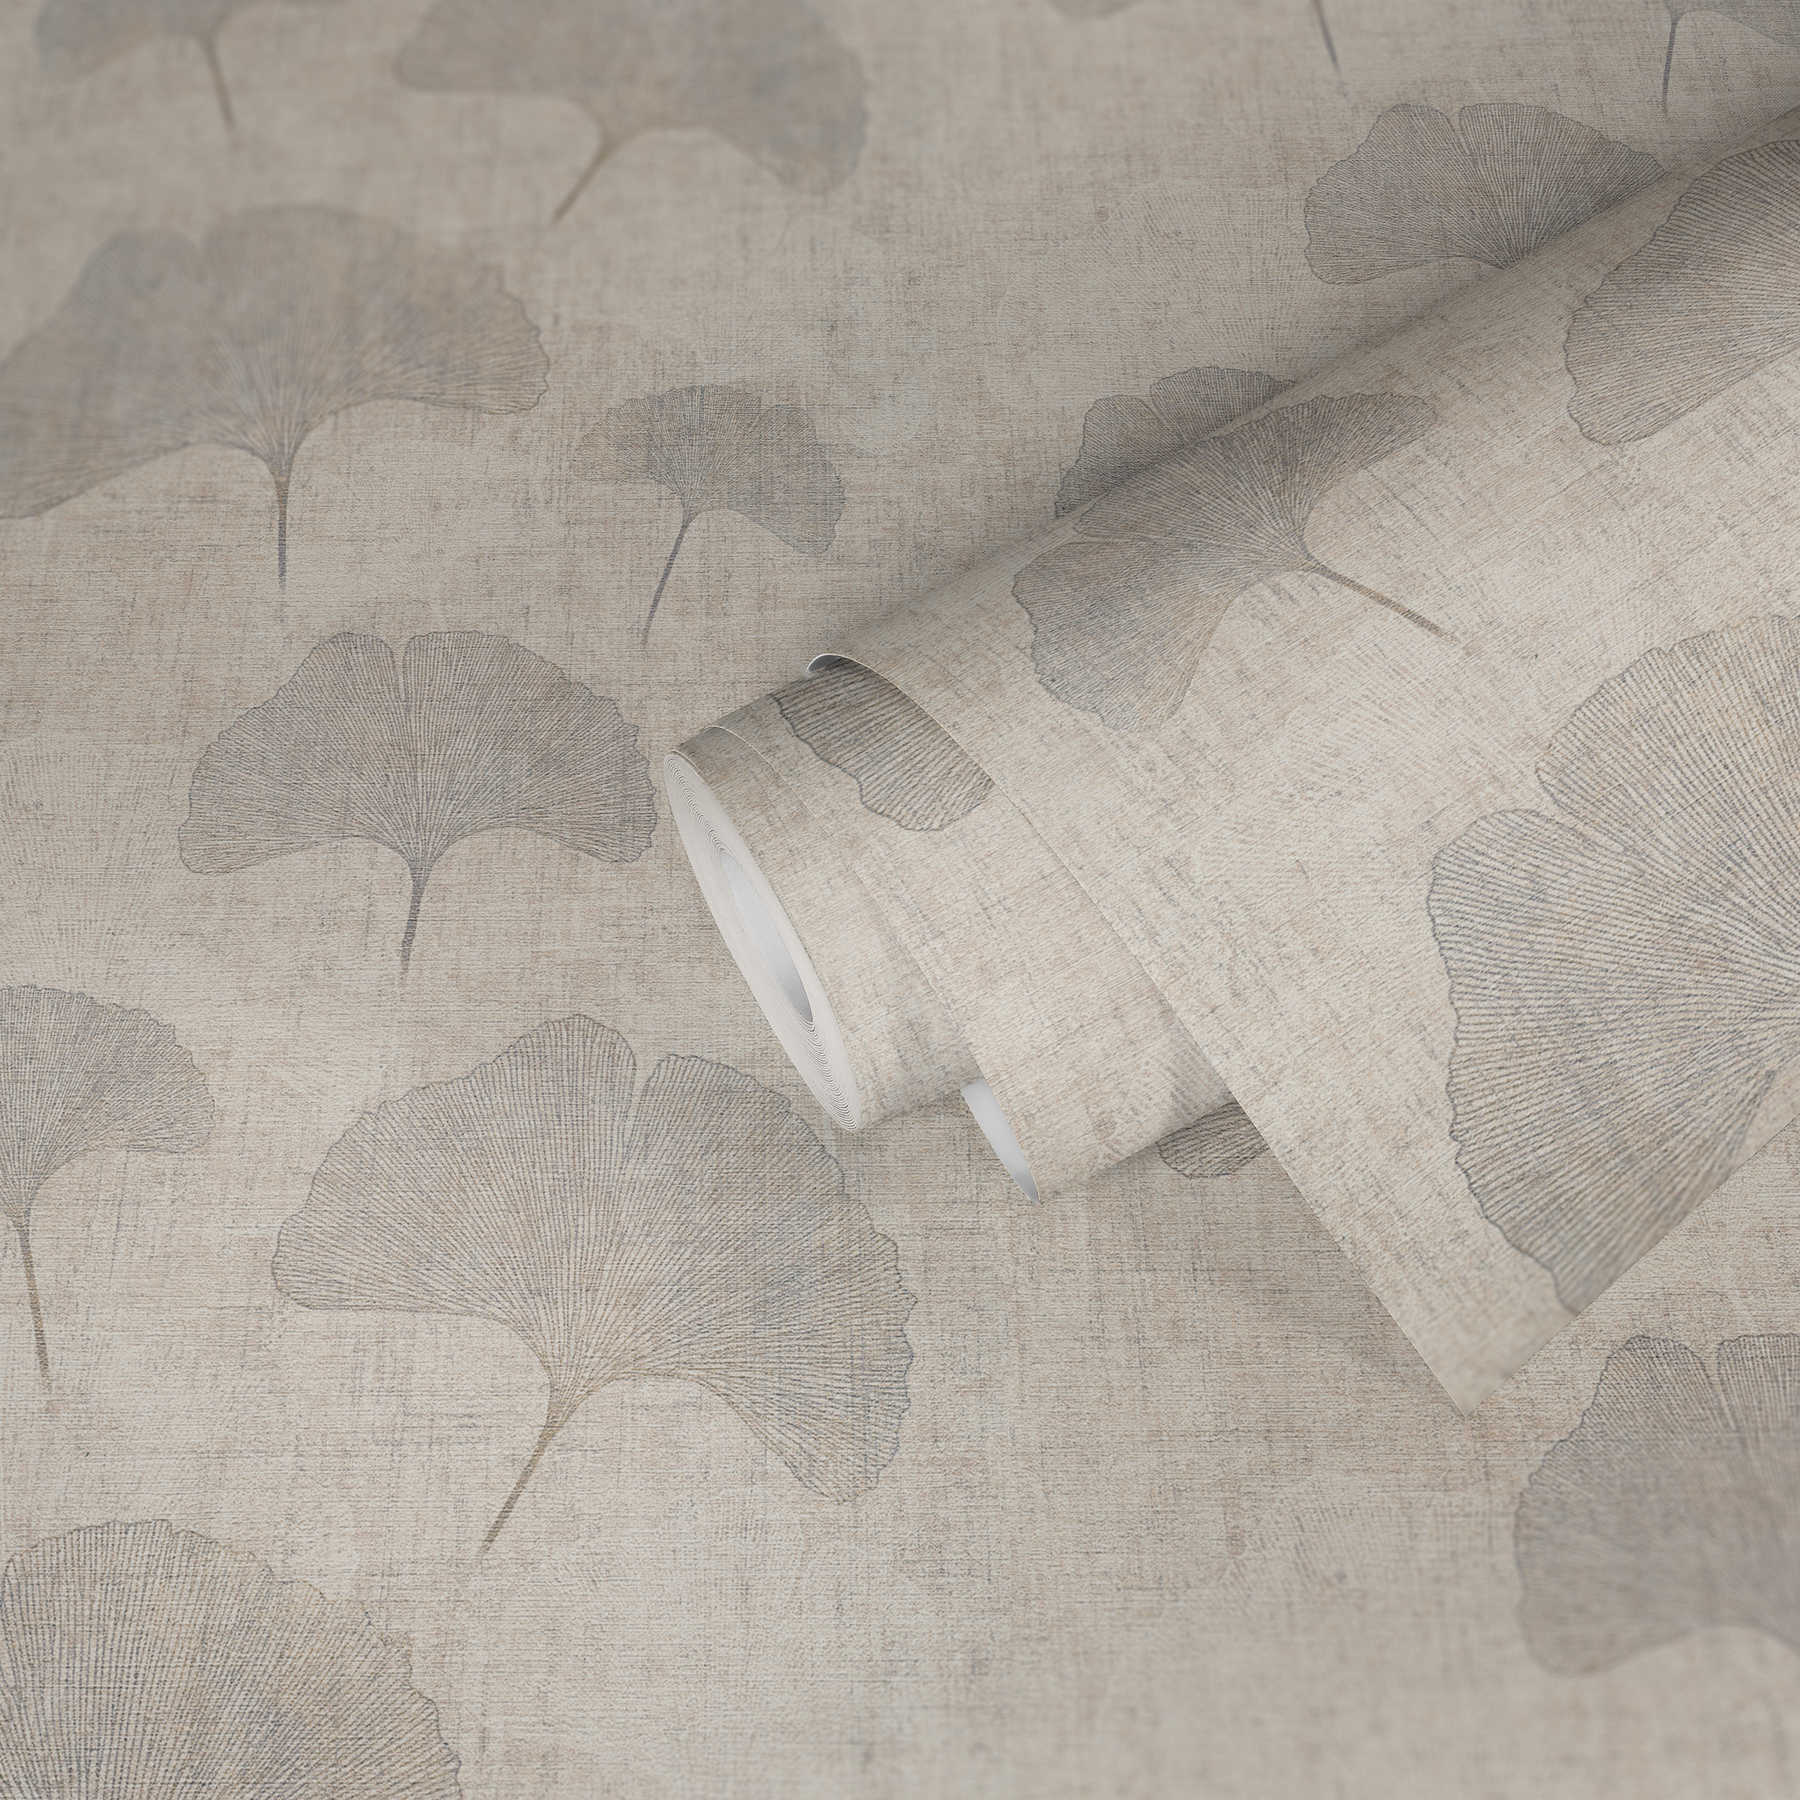             Wallpaper ginko leaves metallic effect, linen look- beige, silver, brown
        